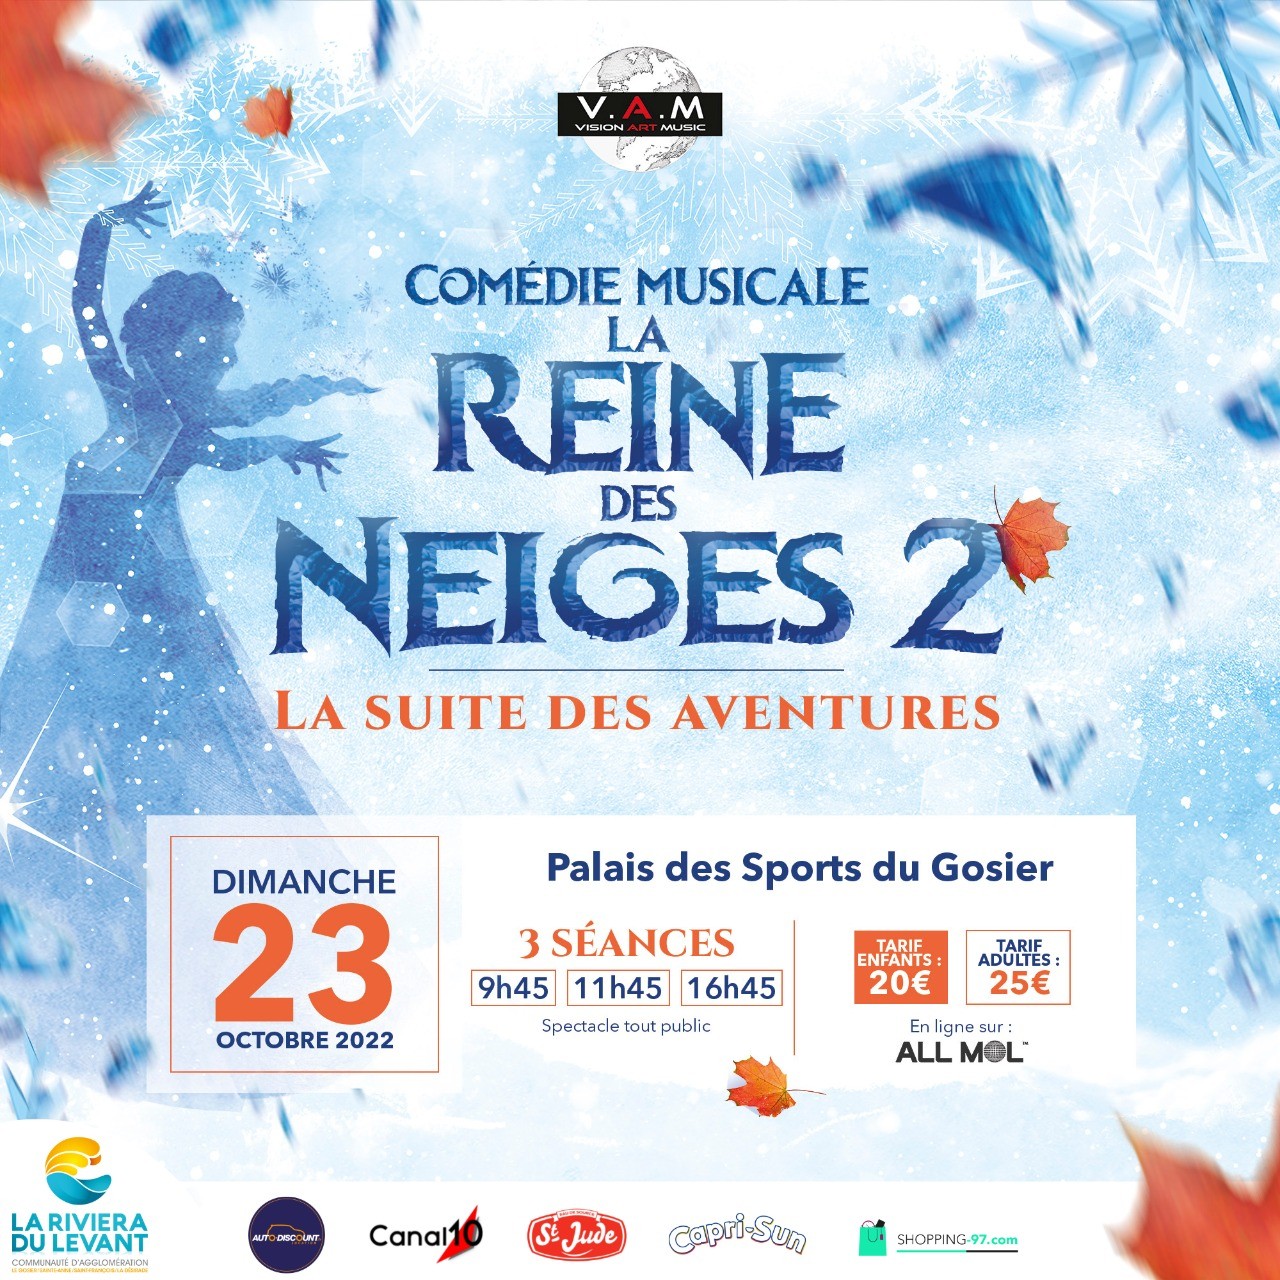 Comédie musicale La Reine des neiges 2 - Séance de 9h45 - Dimanche 23 octobre au Palais des Sports du Gosier